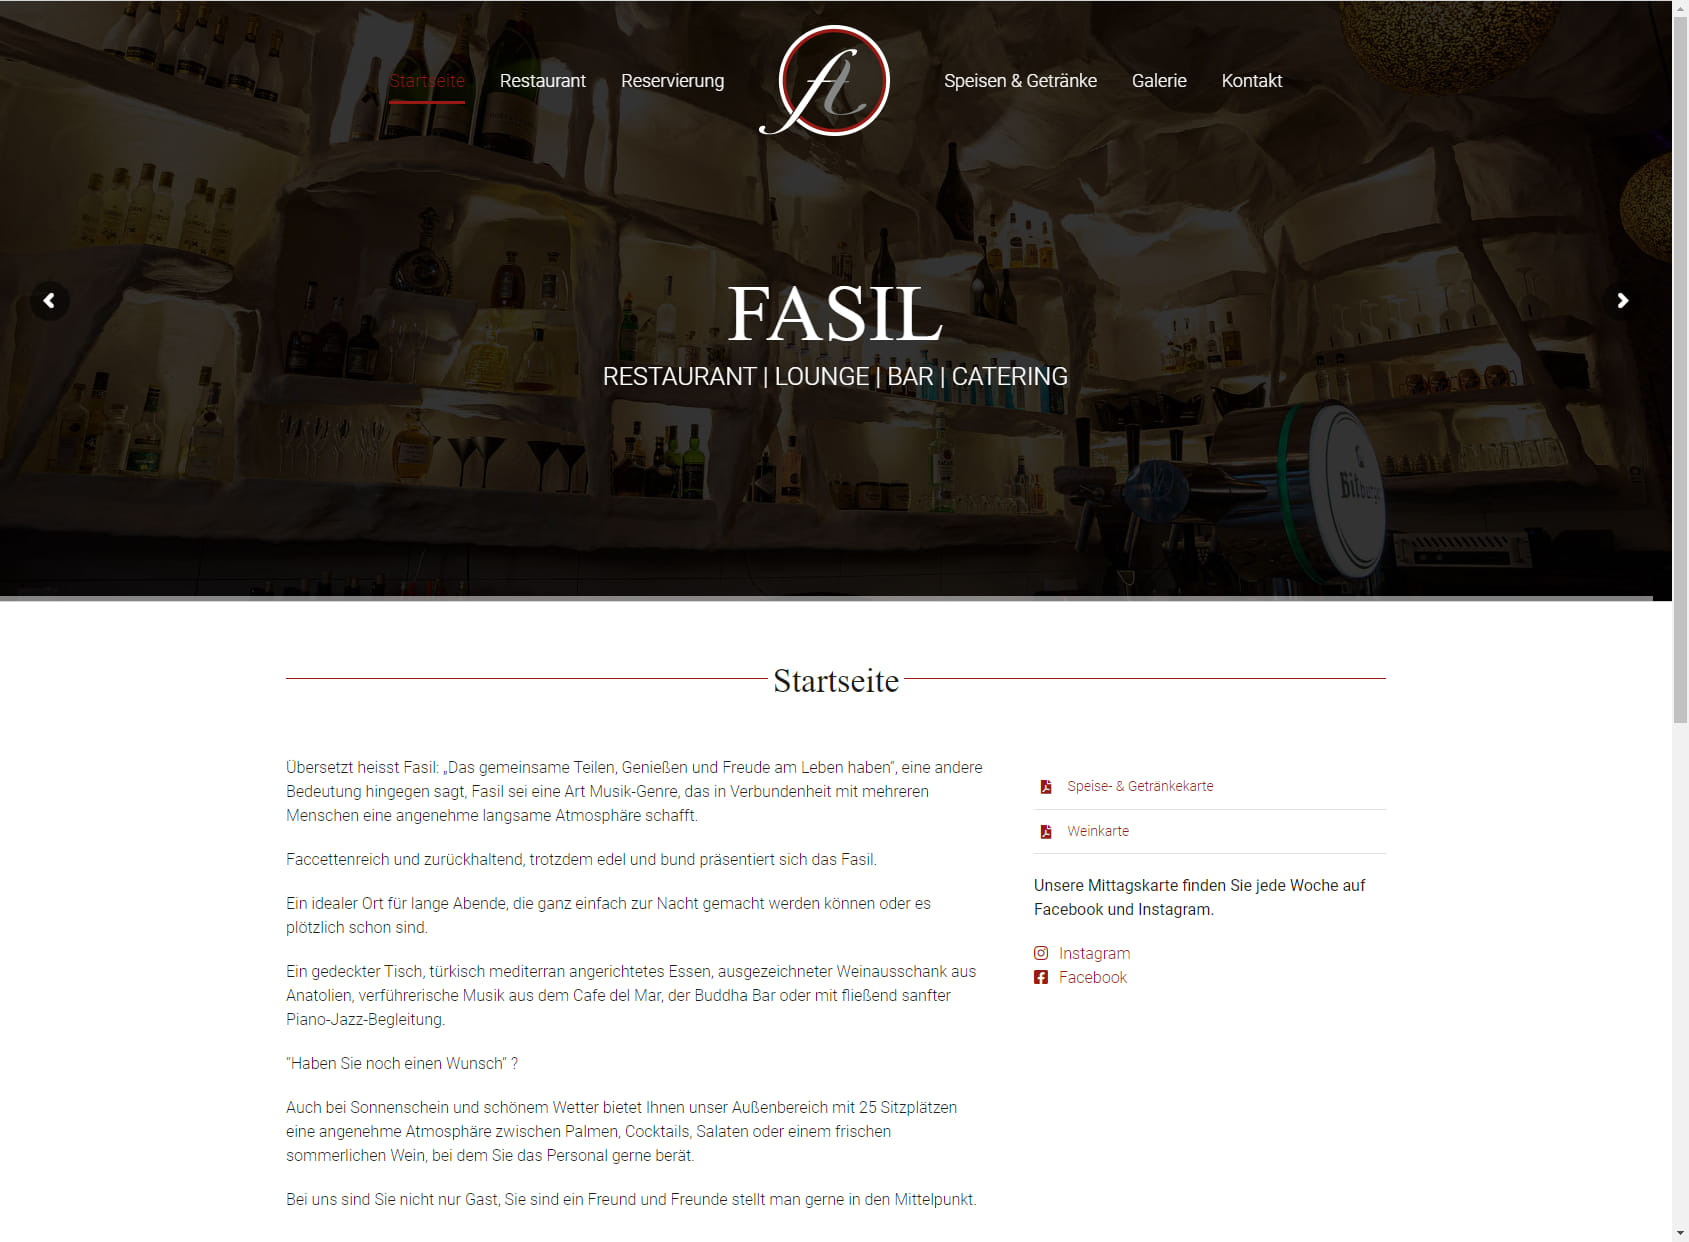 Fasil Restaurant